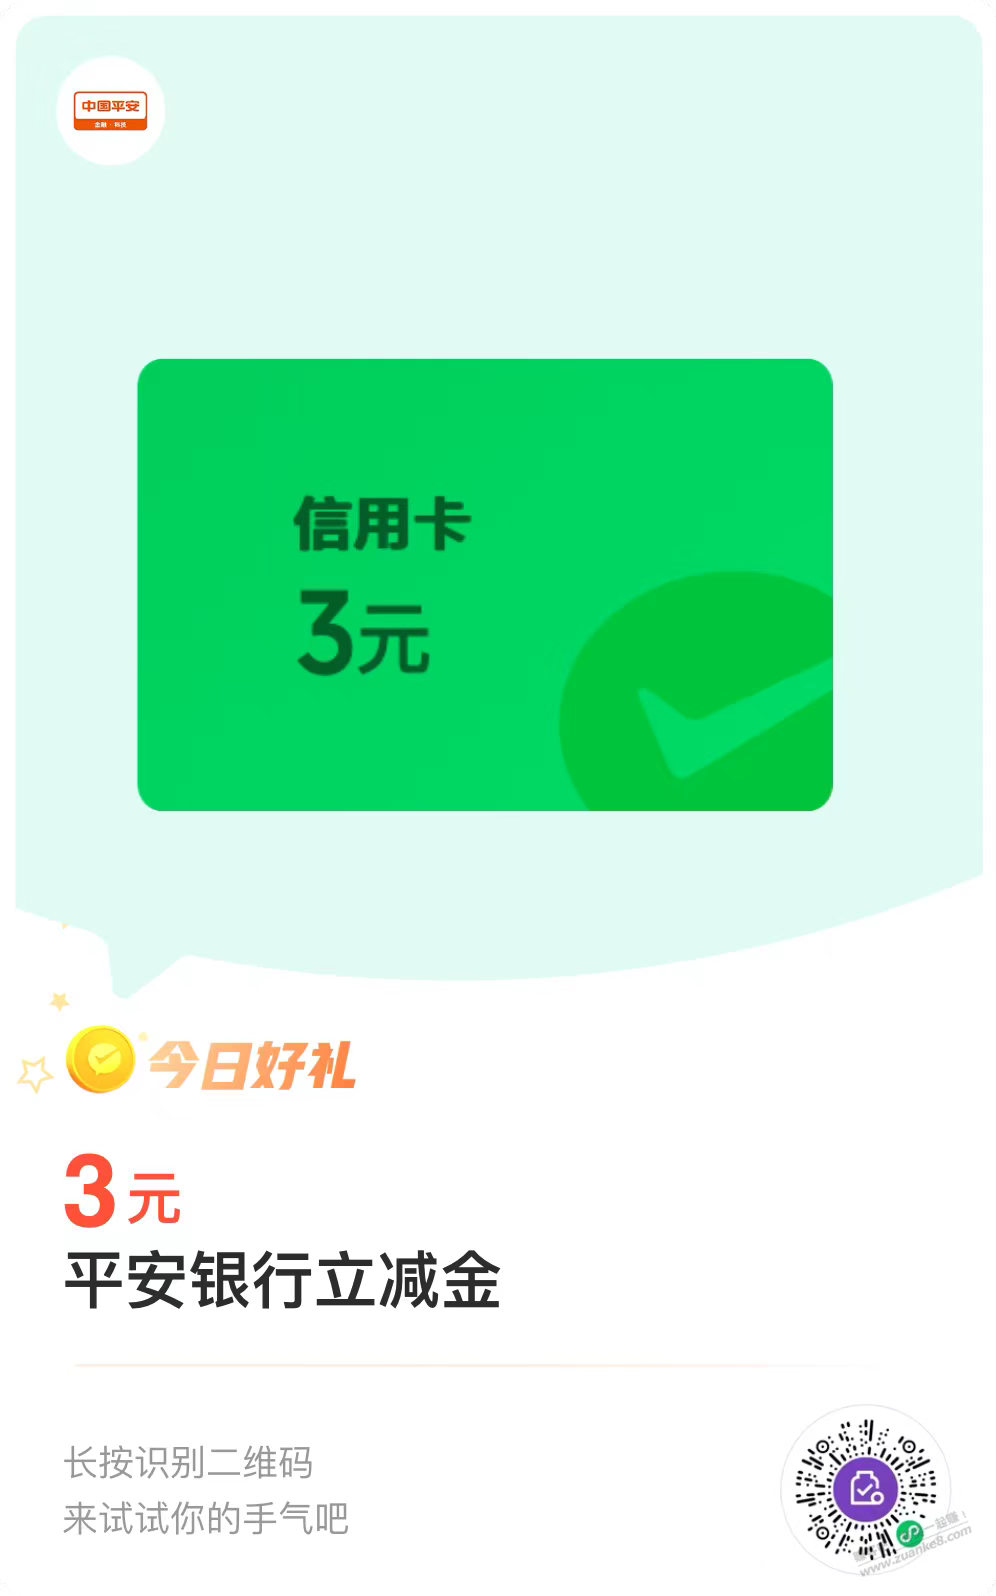 新的-平安xing/用卡3元-惠小助(52huixz.com)